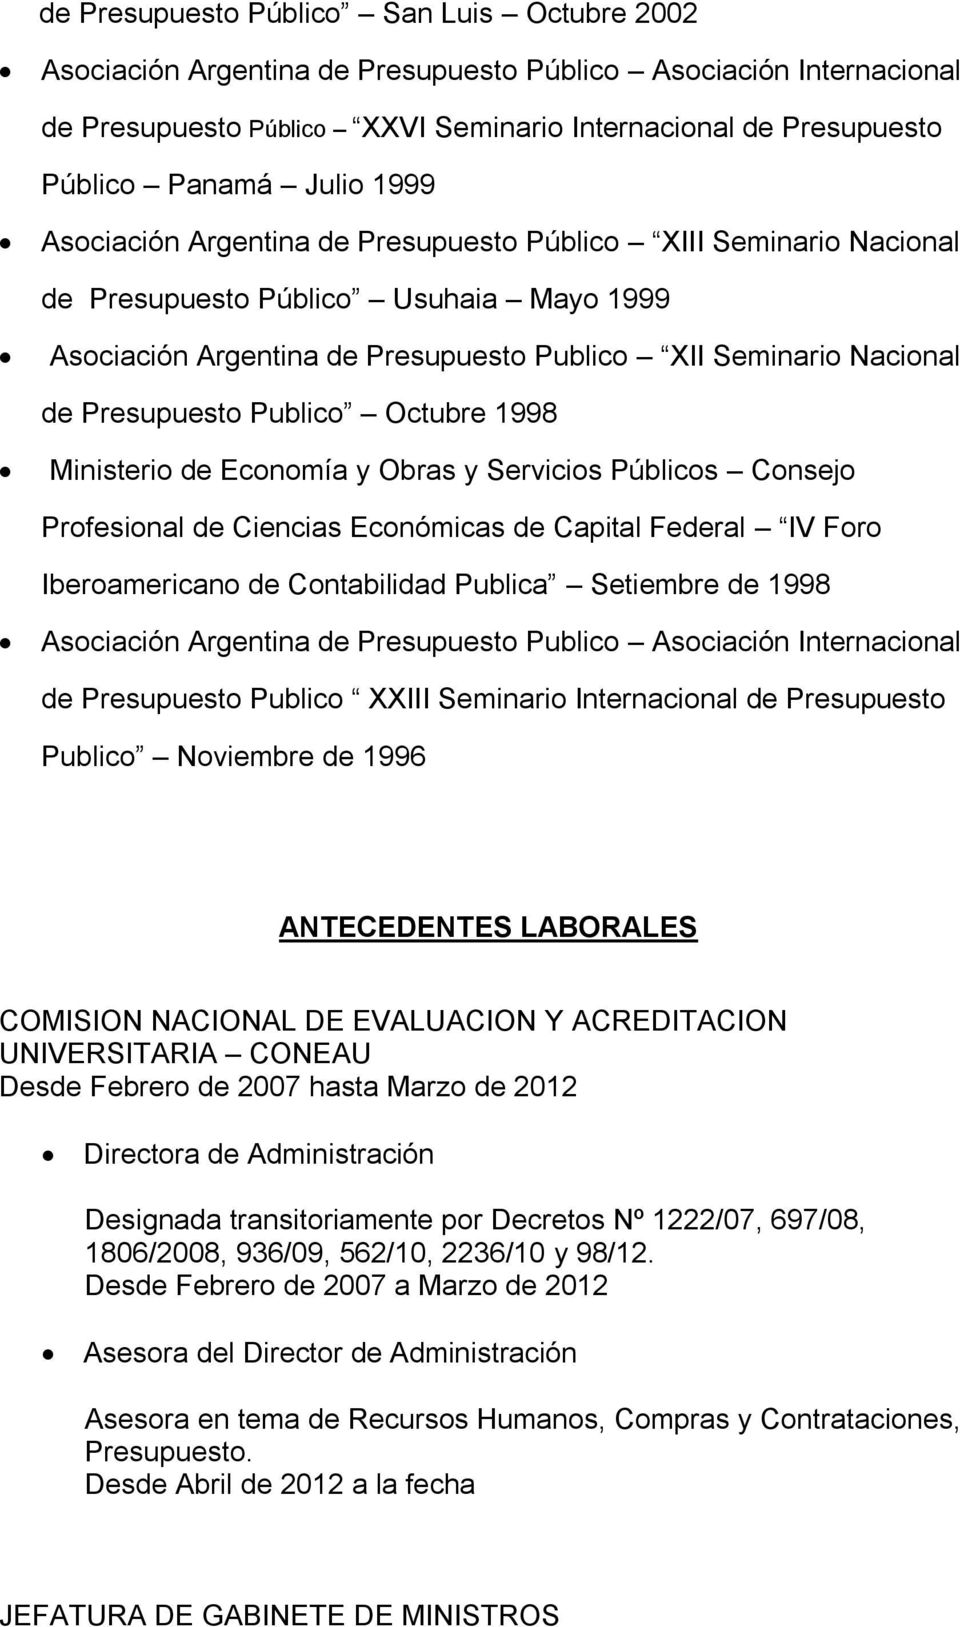 Presupuesto Publico Octubre 1998 Ministerio de Economía y Obras y Servicios Públicos Consejo Profesional de Ciencias Económicas de Capital Federal IV Foro Iberoamericano de Contabilidad Publica